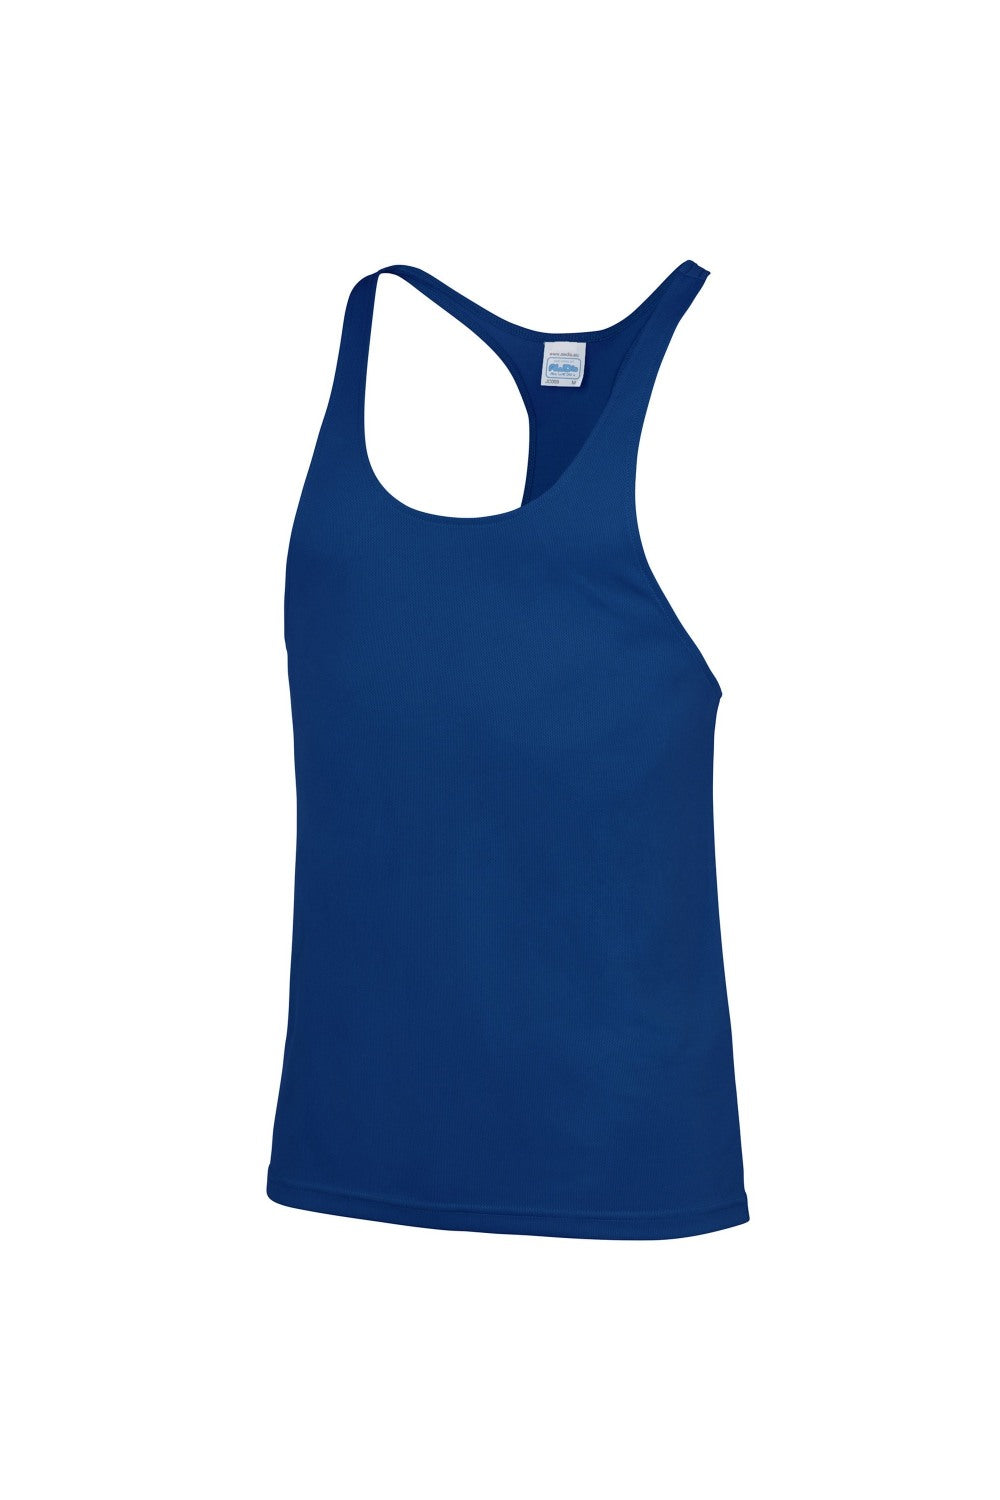 Mens Plain Muscle Sports/Gym Vest Top - Royal Blue